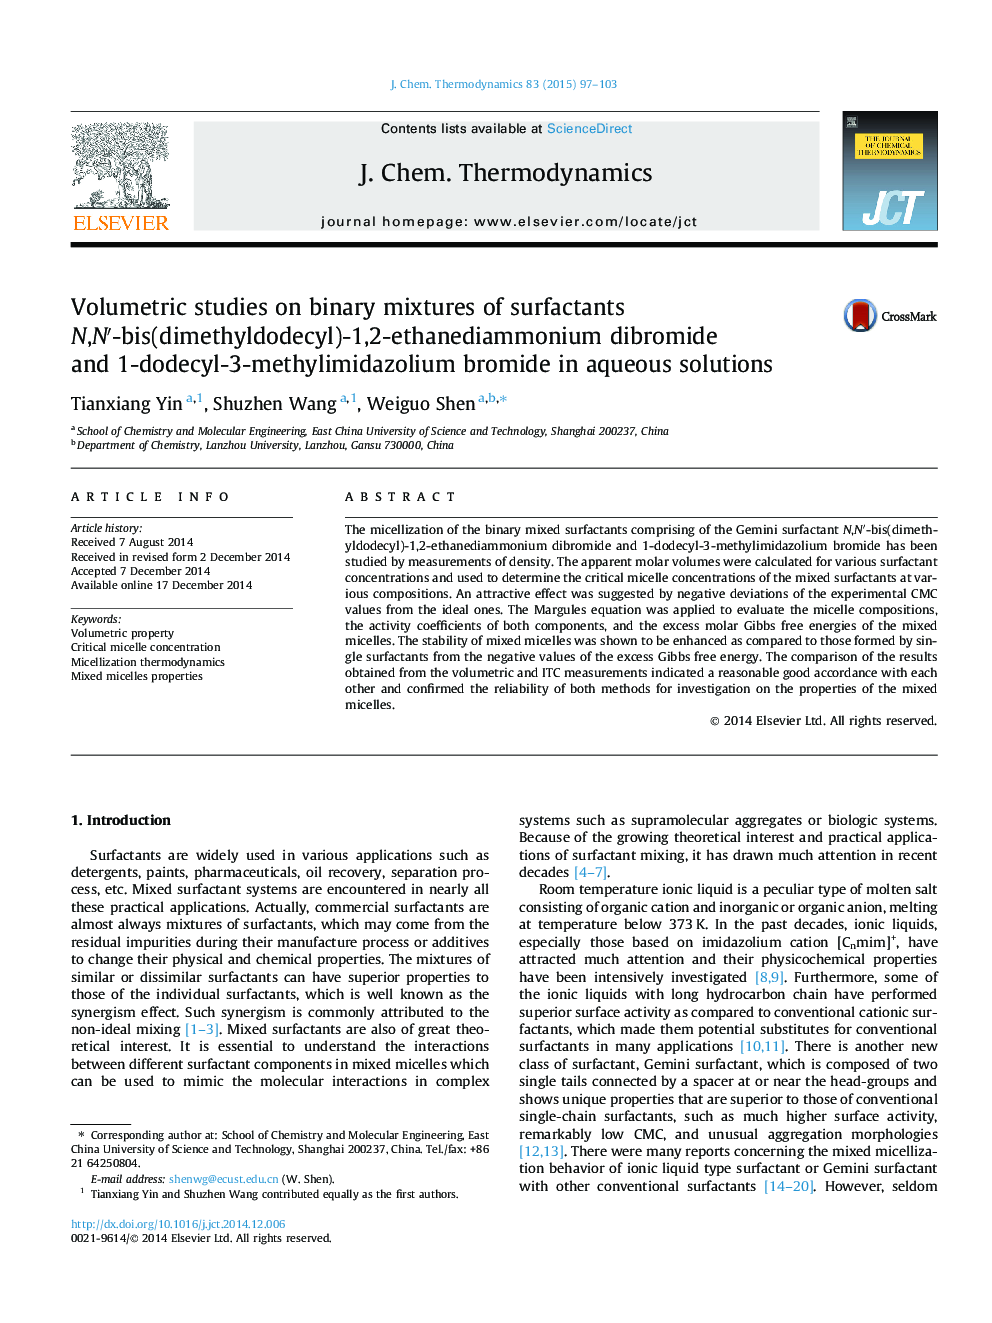 Volumetric studies on binary mixtures of surfactants N,N′-bis(dimethyldodecyl)-1,2-ethanediammonium dibromide and 1-dodecyl-3-methylimidazolium bromide in aqueous solutions